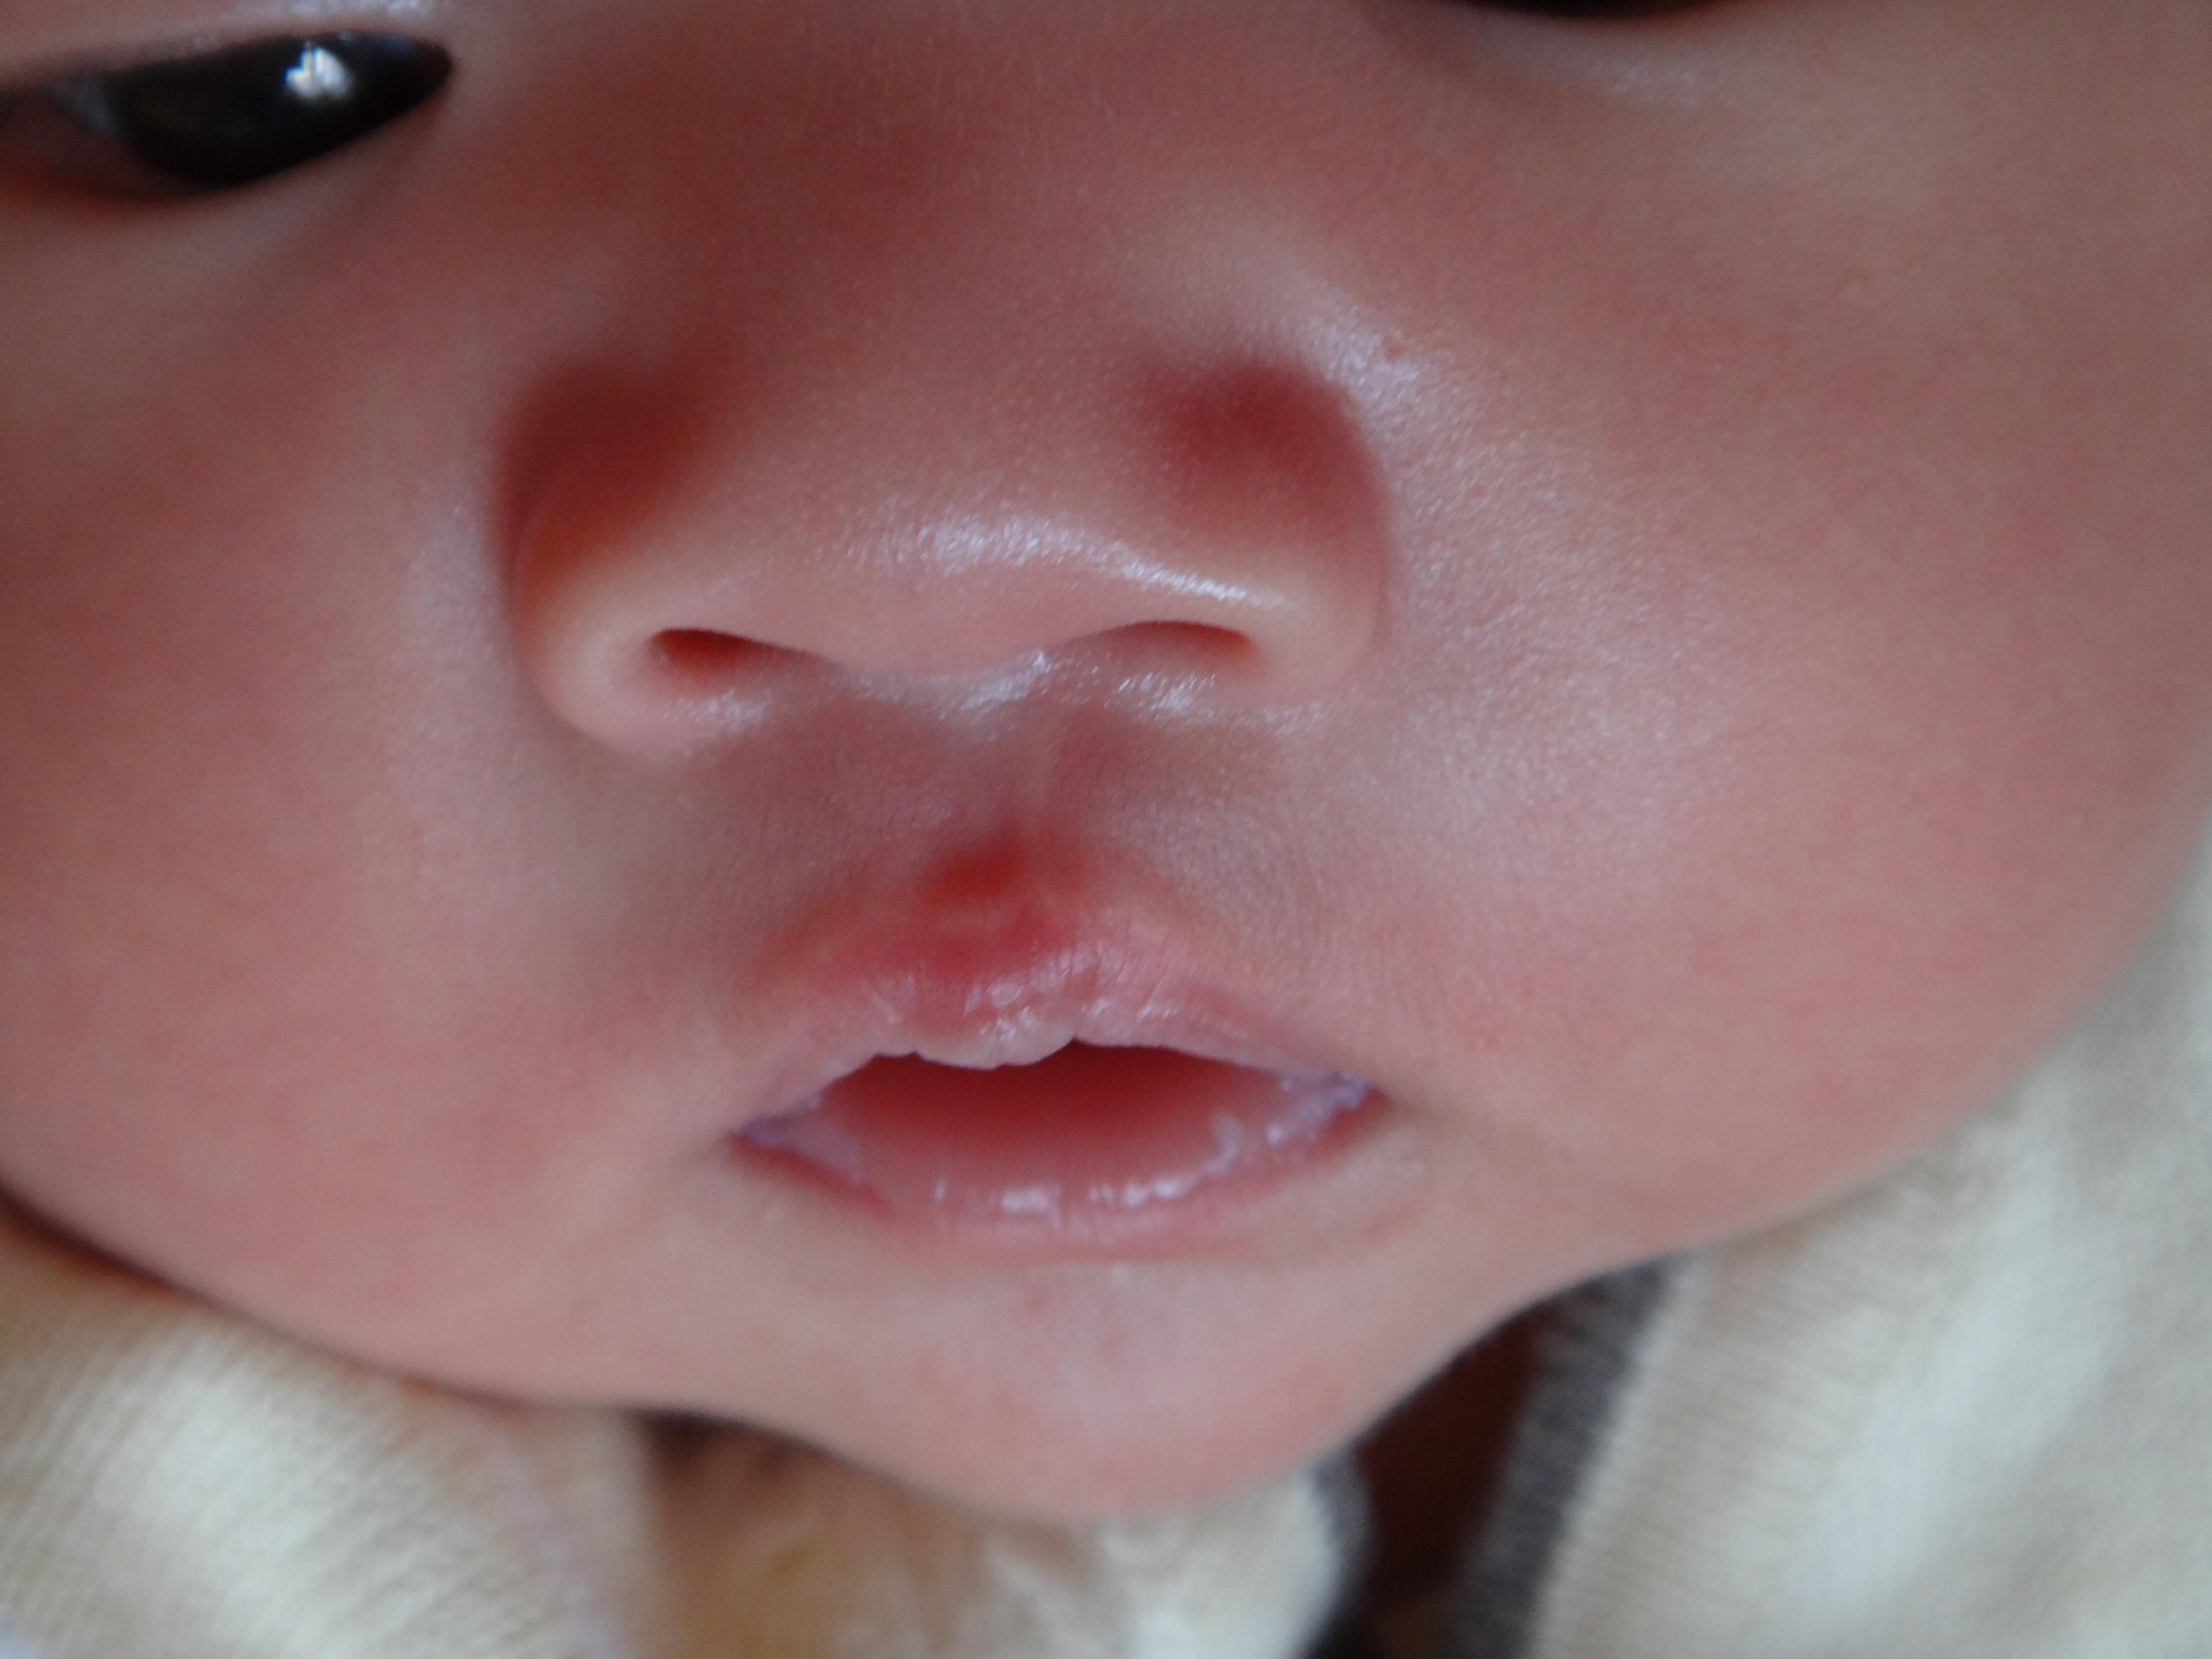 胎儿唇腭裂产前超声检查专家共识...|唇腭裂|共识|胎儿|检查|-健康界